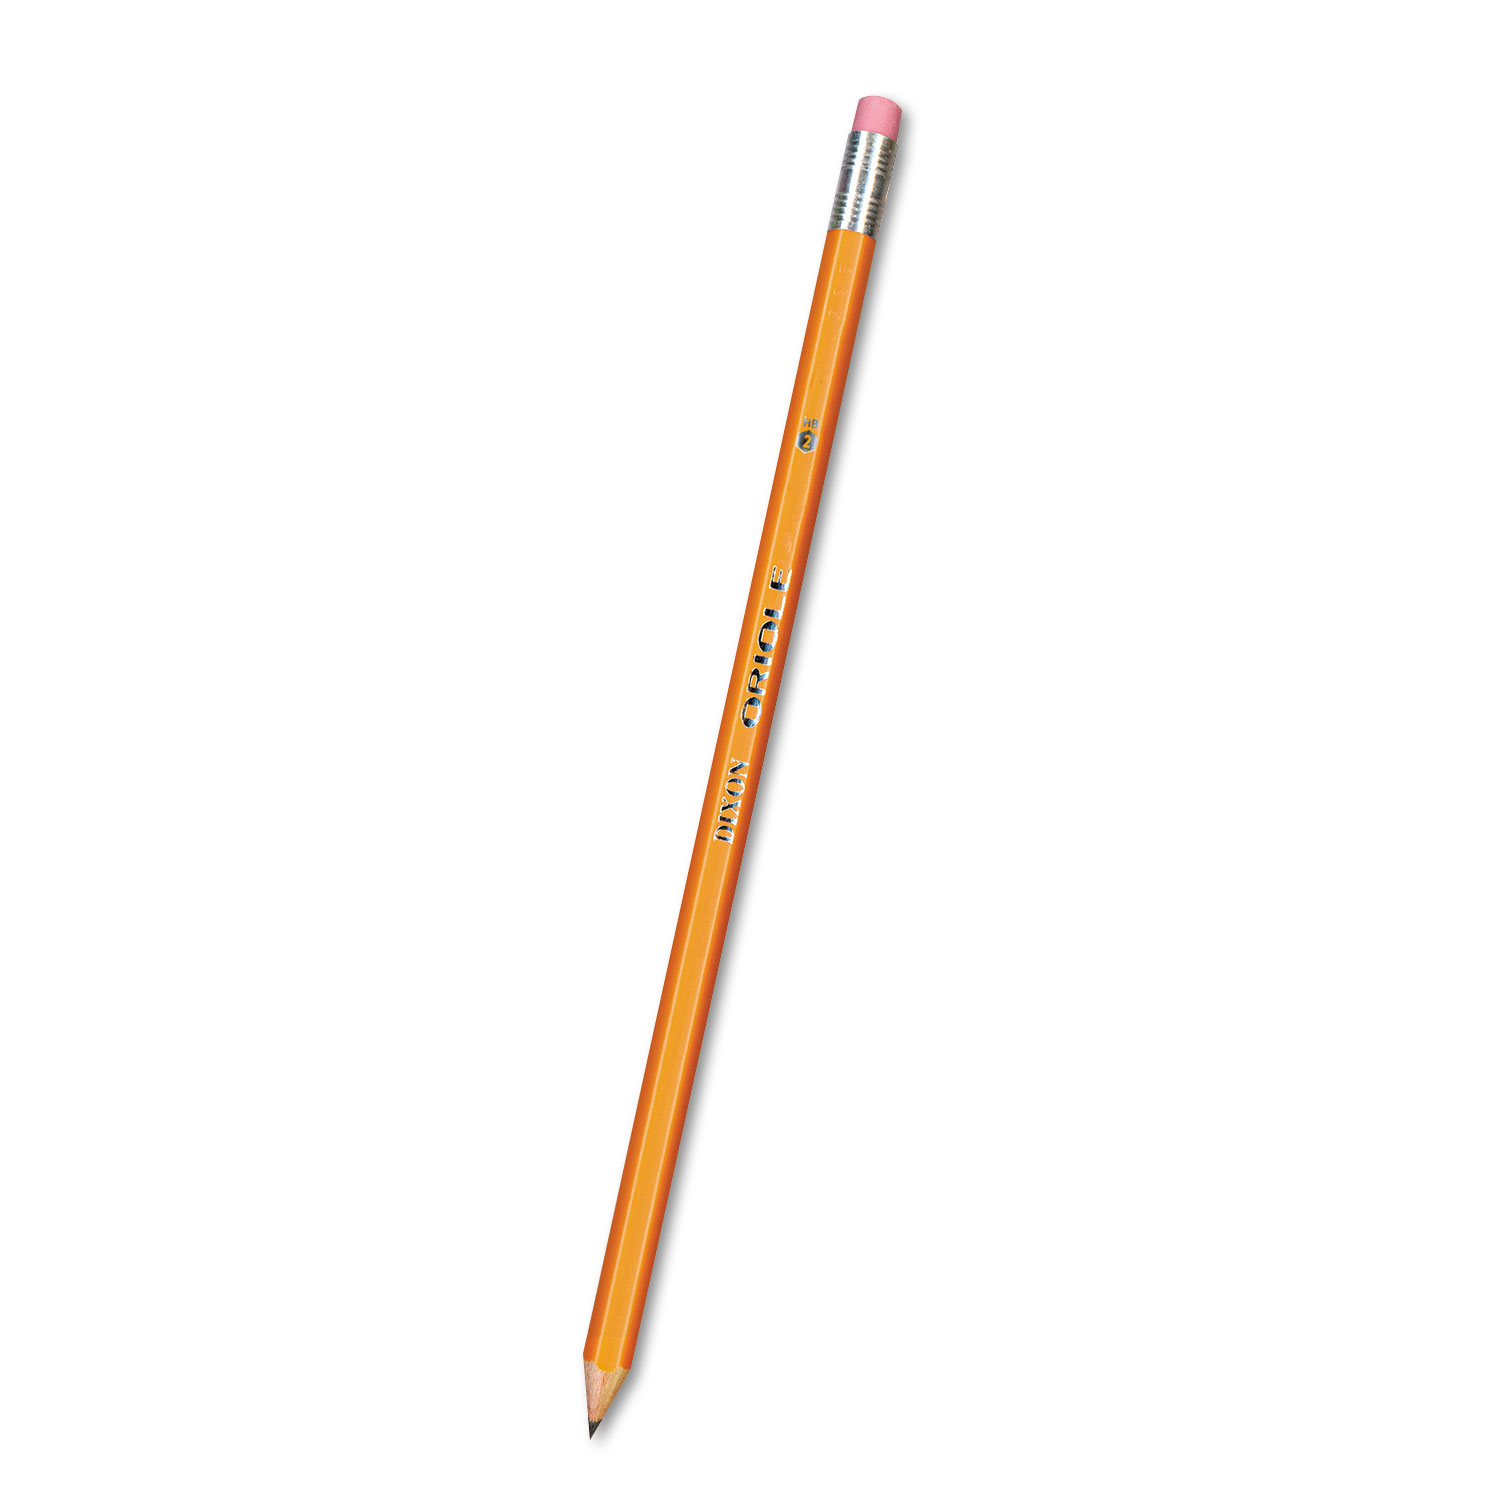  Dixon 12872 Oriole Pencil, HB (#2), Black Lead, Yellow Barrel, 72/Pack (DIX12872) 